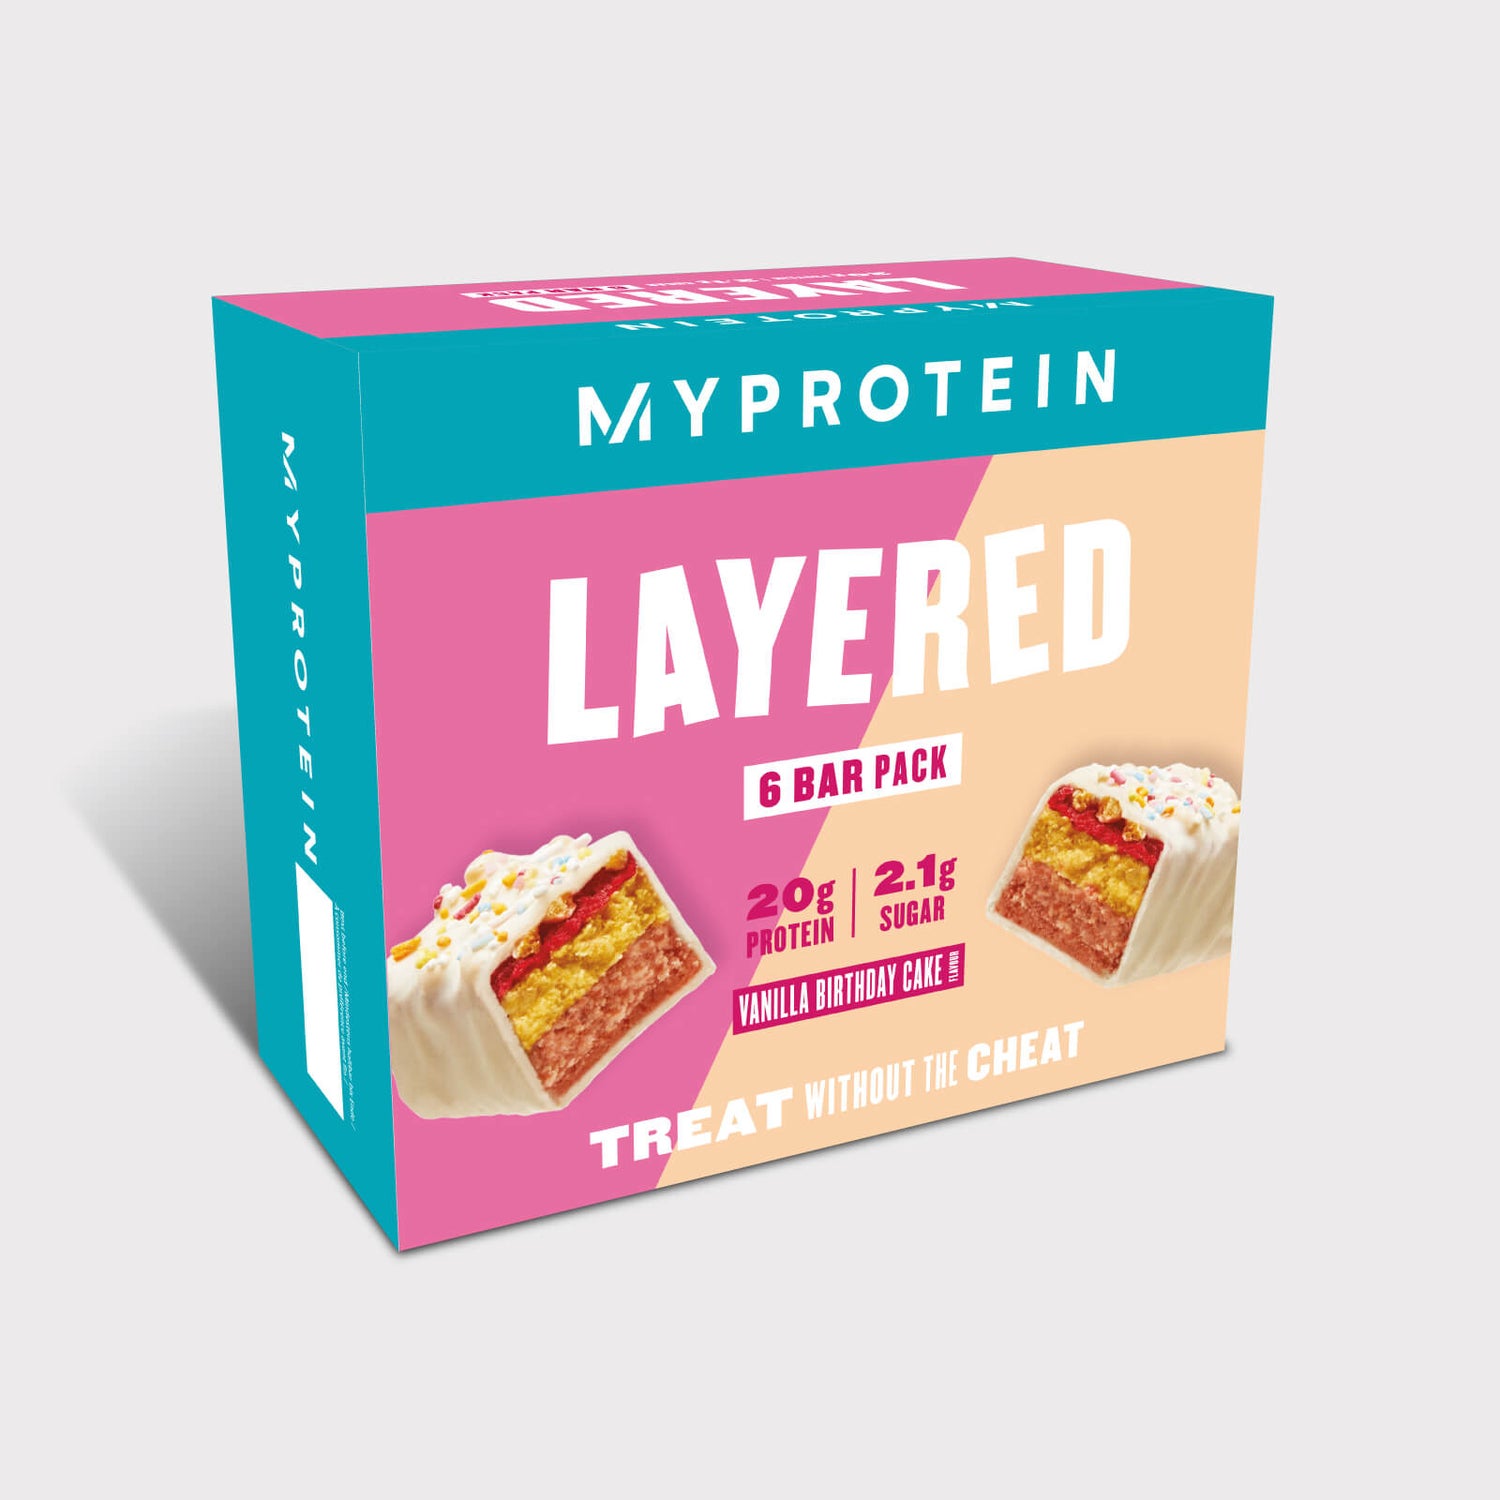 Layered Protein Bar - 6Bars - Birthday Cake